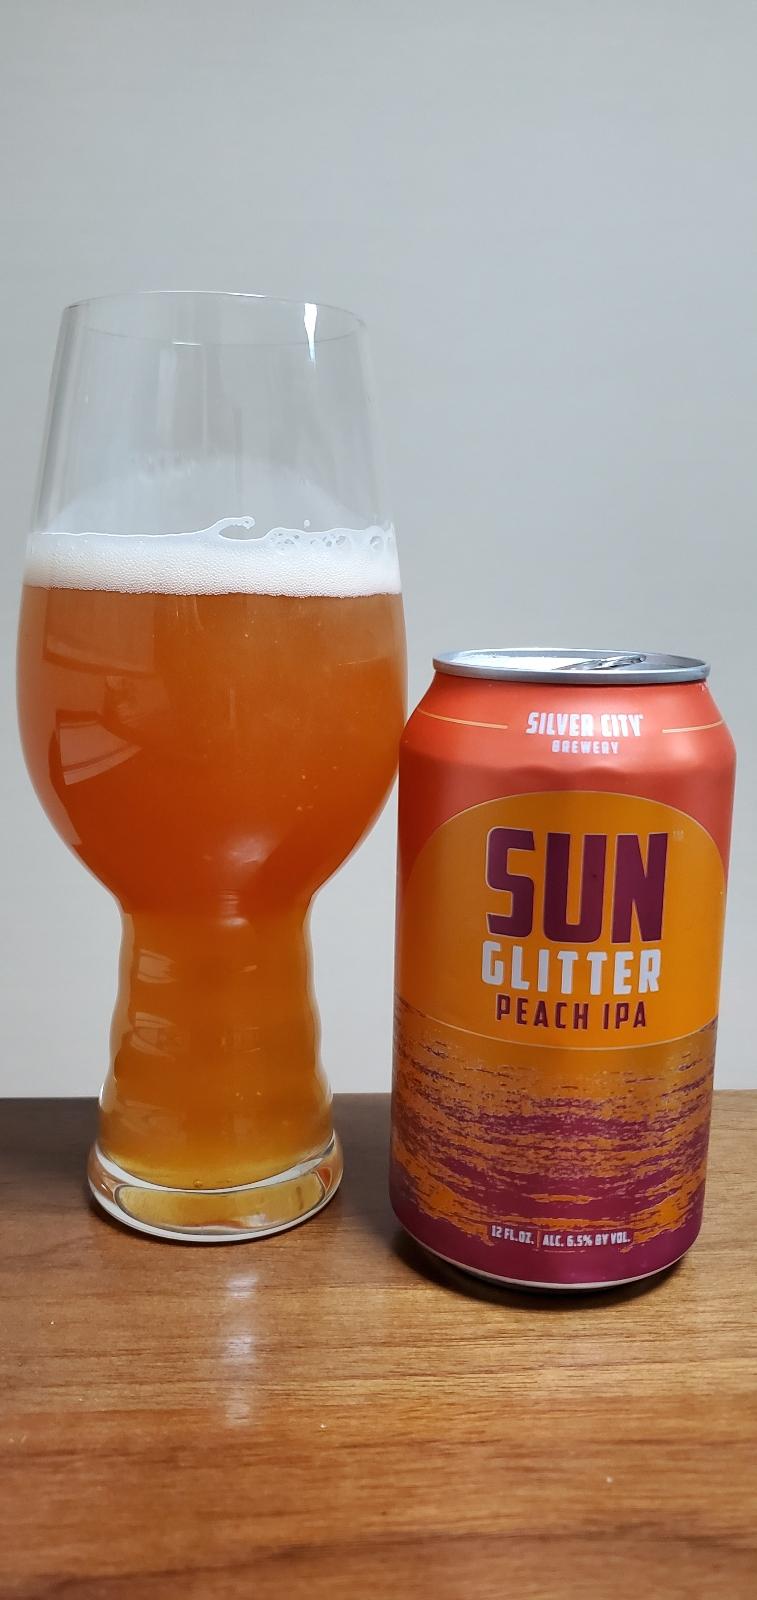 Sun Glitter Peach IPA